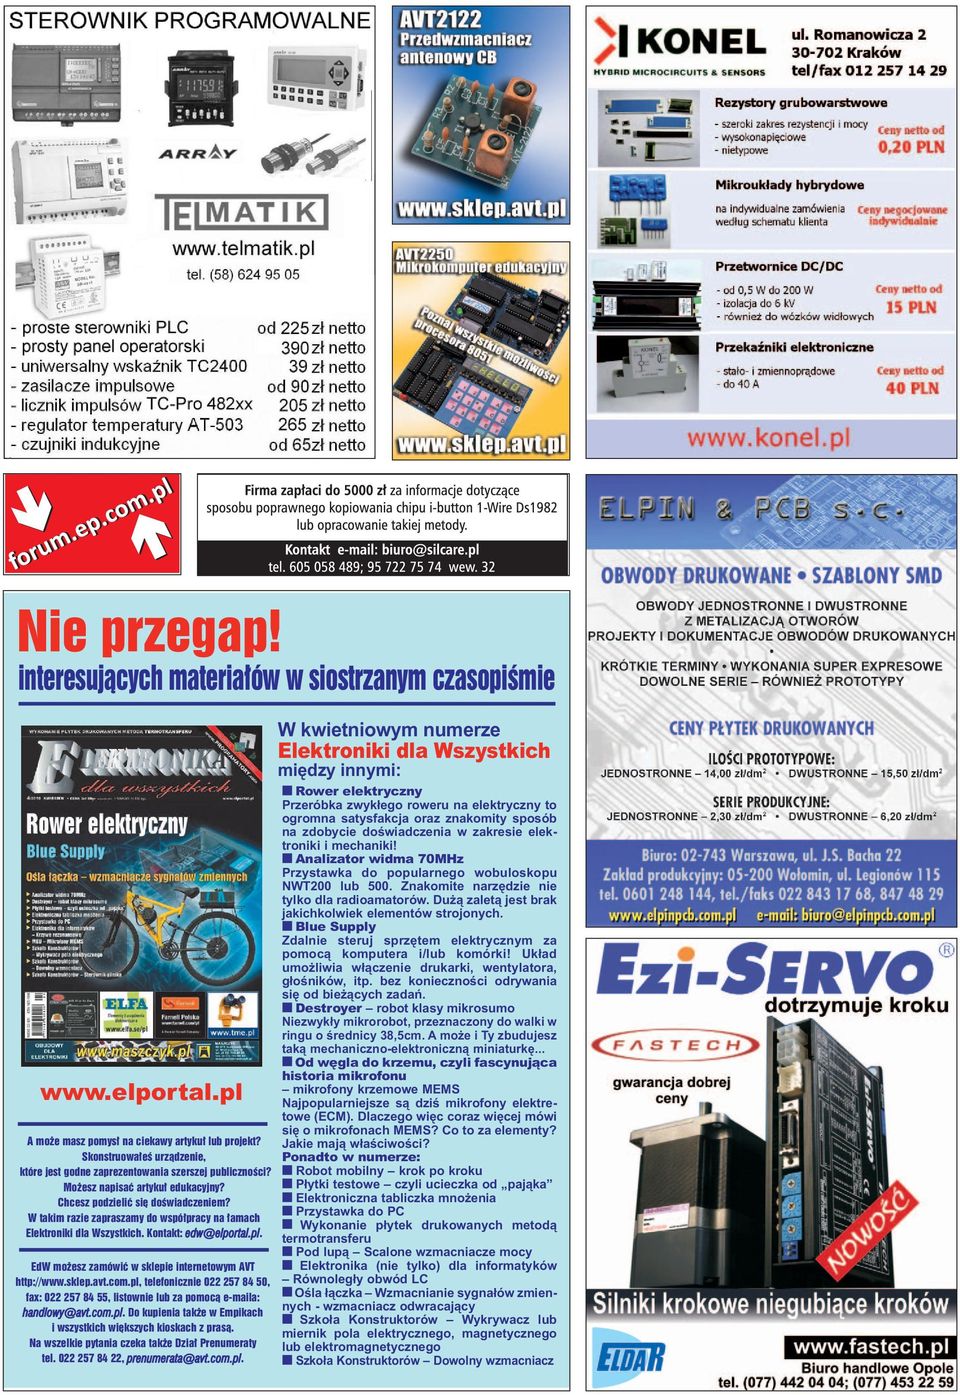 W takim razie zapraszamy do współpracy na łamach Elektroniki dla Wszystkich. Kontakt: edw@elportal.pl. EdW możesz zamówić w sklepie internetowym AVT http://www.sklep.avt.com.